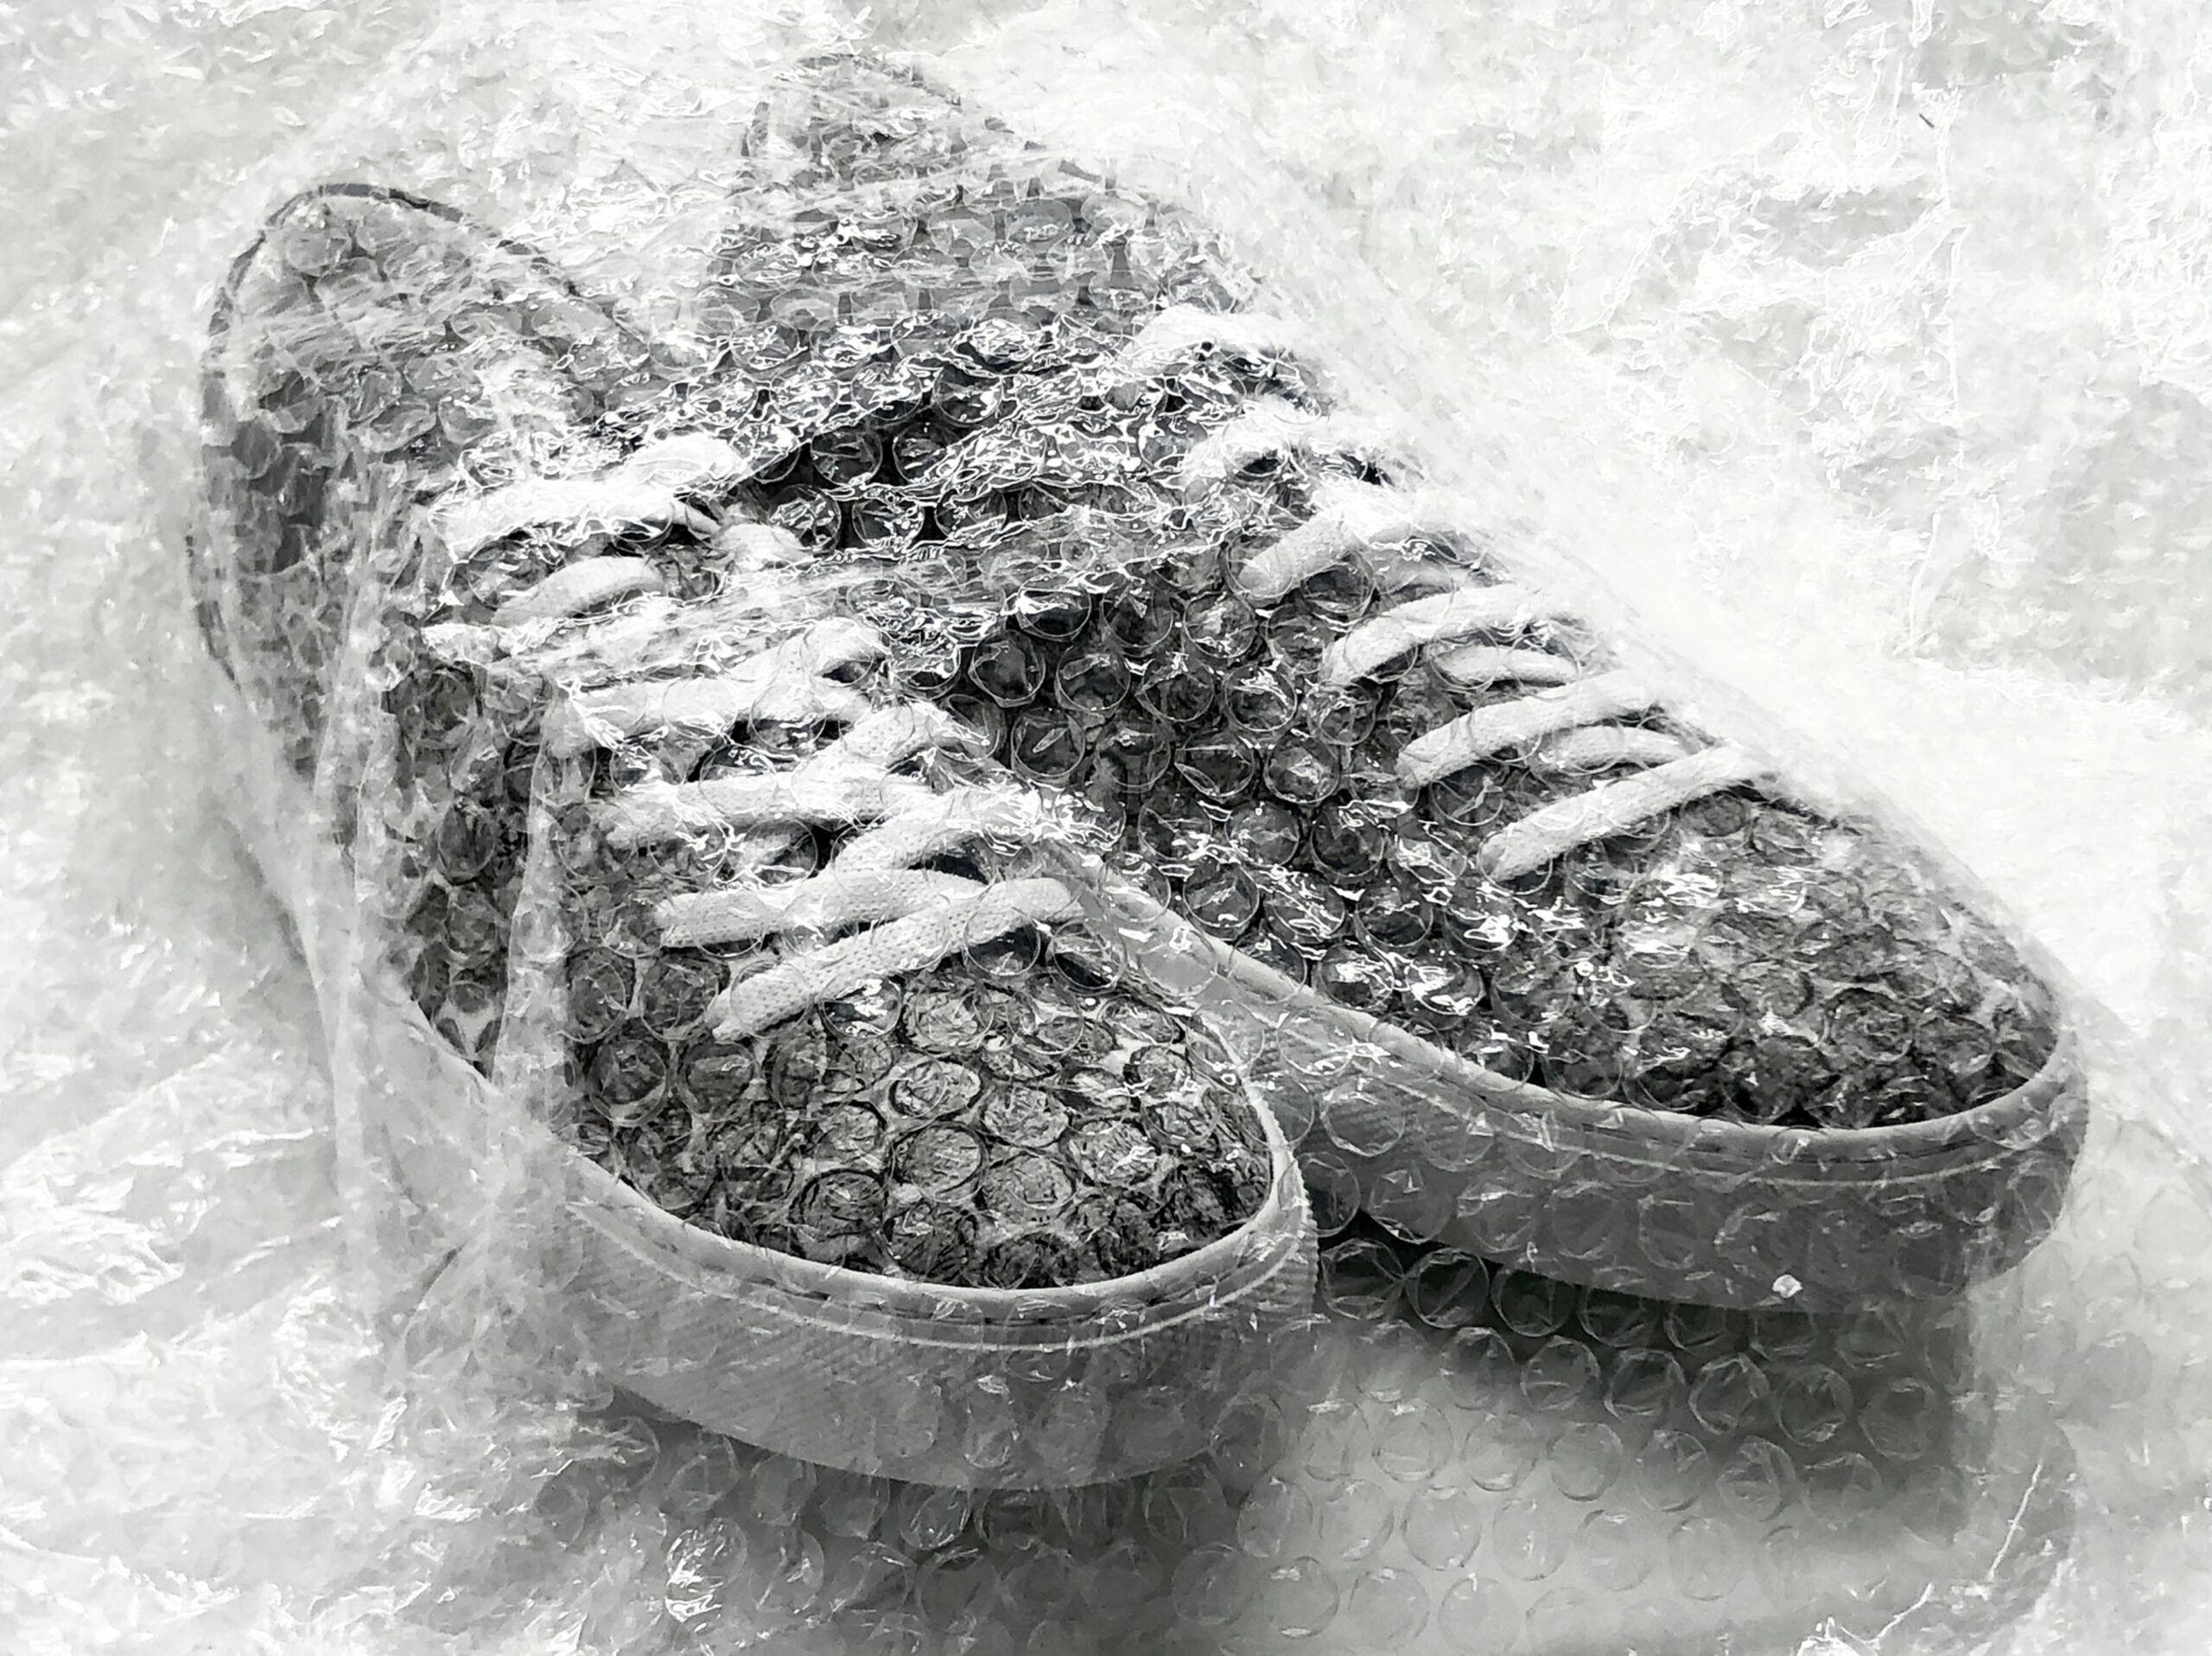 Fashioniste, fiți pe fază! S-au lansat primii sneakers confecționați din folie cu bule reciclată. Cât de cool sunt?